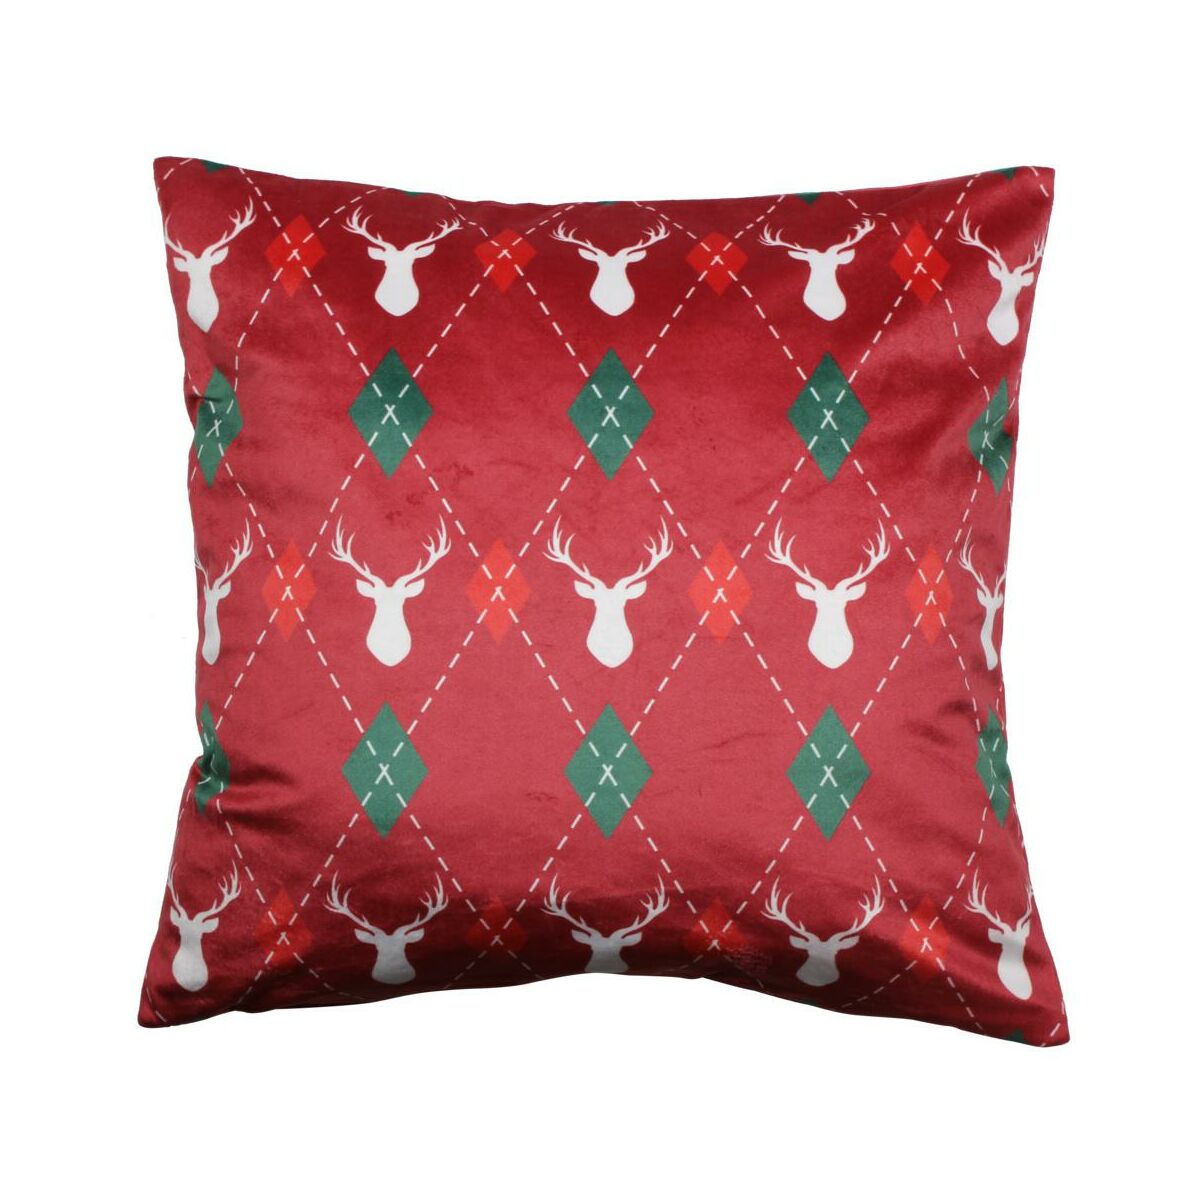 Poszewka na poduszkę Deer czerwona 45 x 45 cm